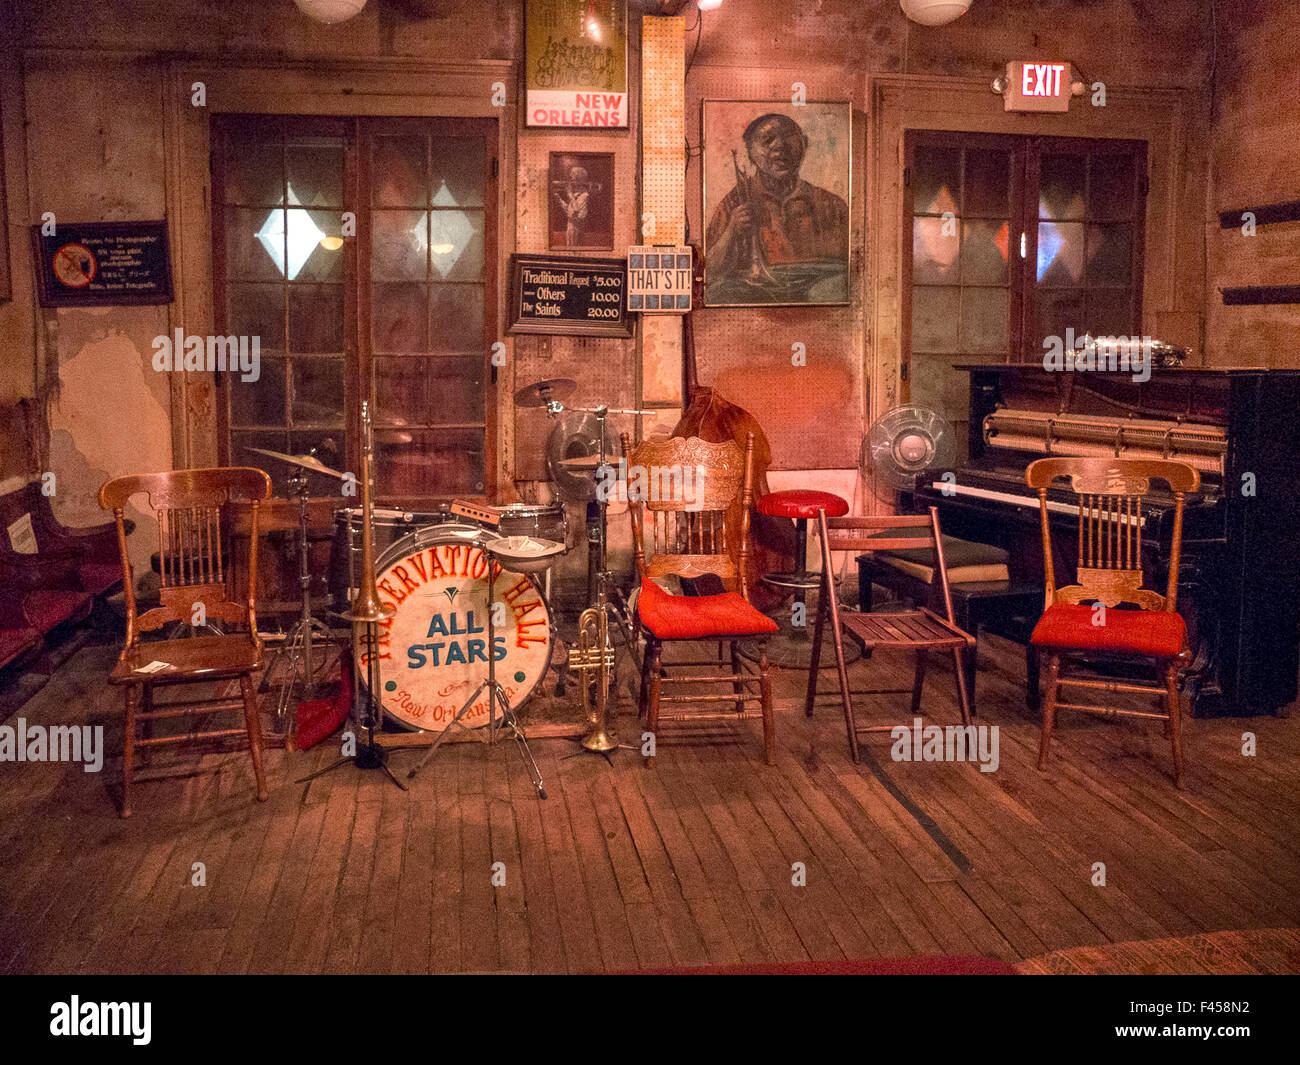 Musikinstrumente und alte Stühle an den berühmten French Quarter jazz Veranstaltungsort Preservation Hall in New Orleans, Louisiana Beachten Sie die Zeichen mit den Preisen für Publikum Anfragen und Porträtmalerei an Wand. Stockfoto